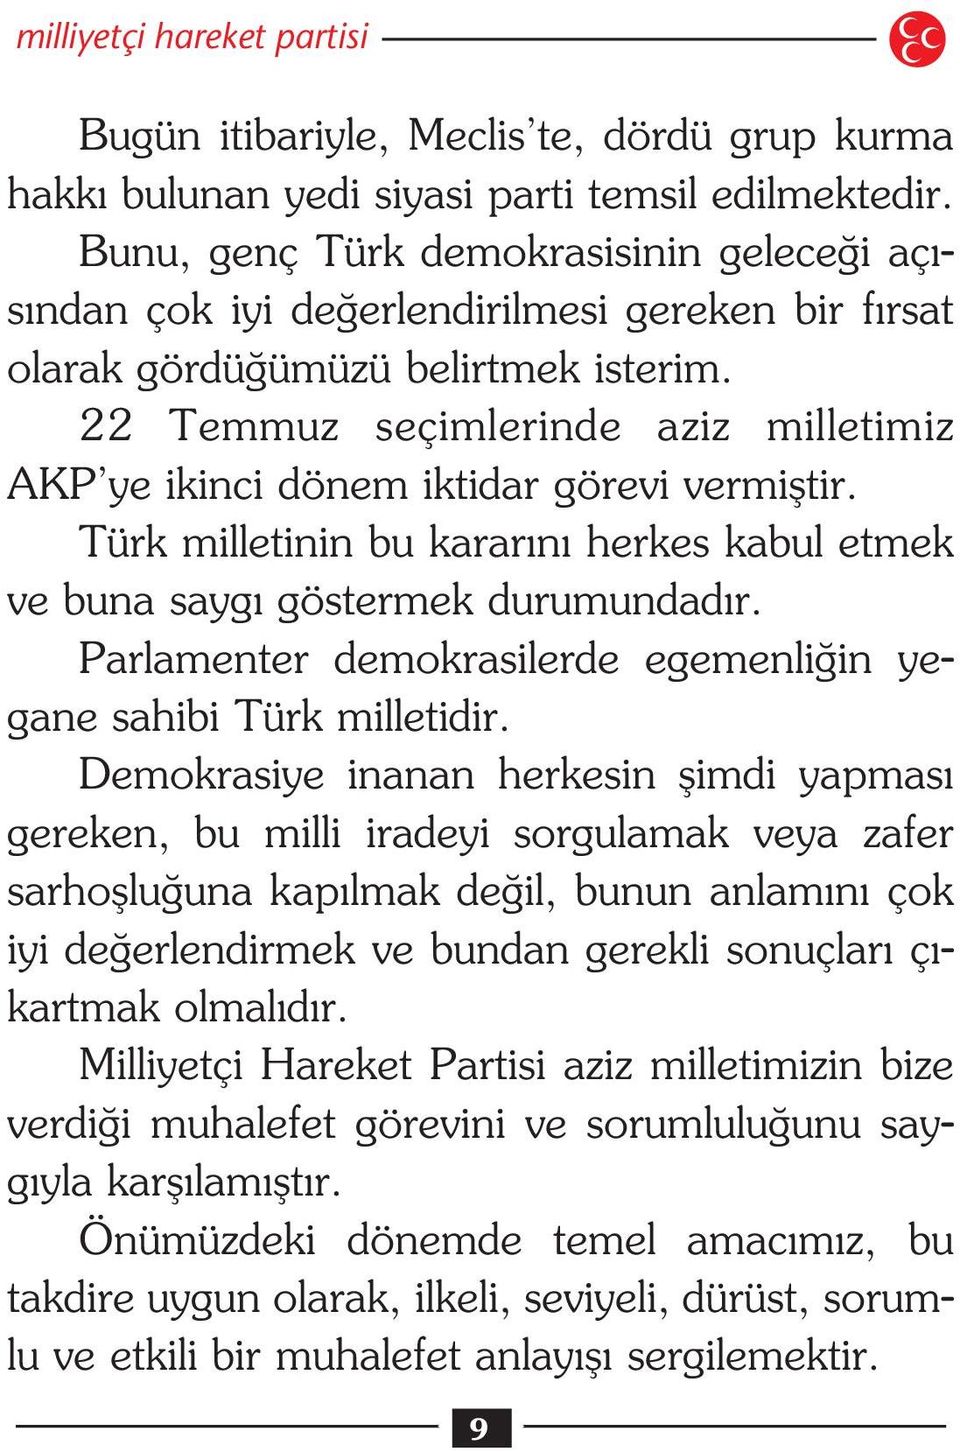 22 Temmuz seçimlerinde aziz milletimiz AKP ye ikinci dönem iktidar görevi vermifltir. Türk milletinin bu karar n herkes kabul etmek ve buna sayg göstermek durumundad r.